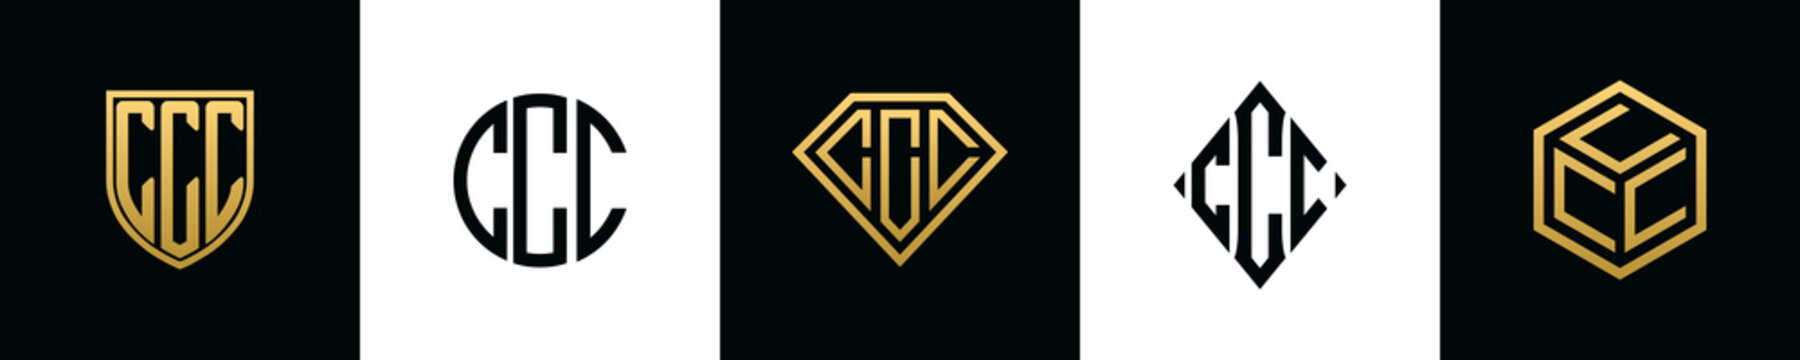 Initial letters CCC logo designs Bundle